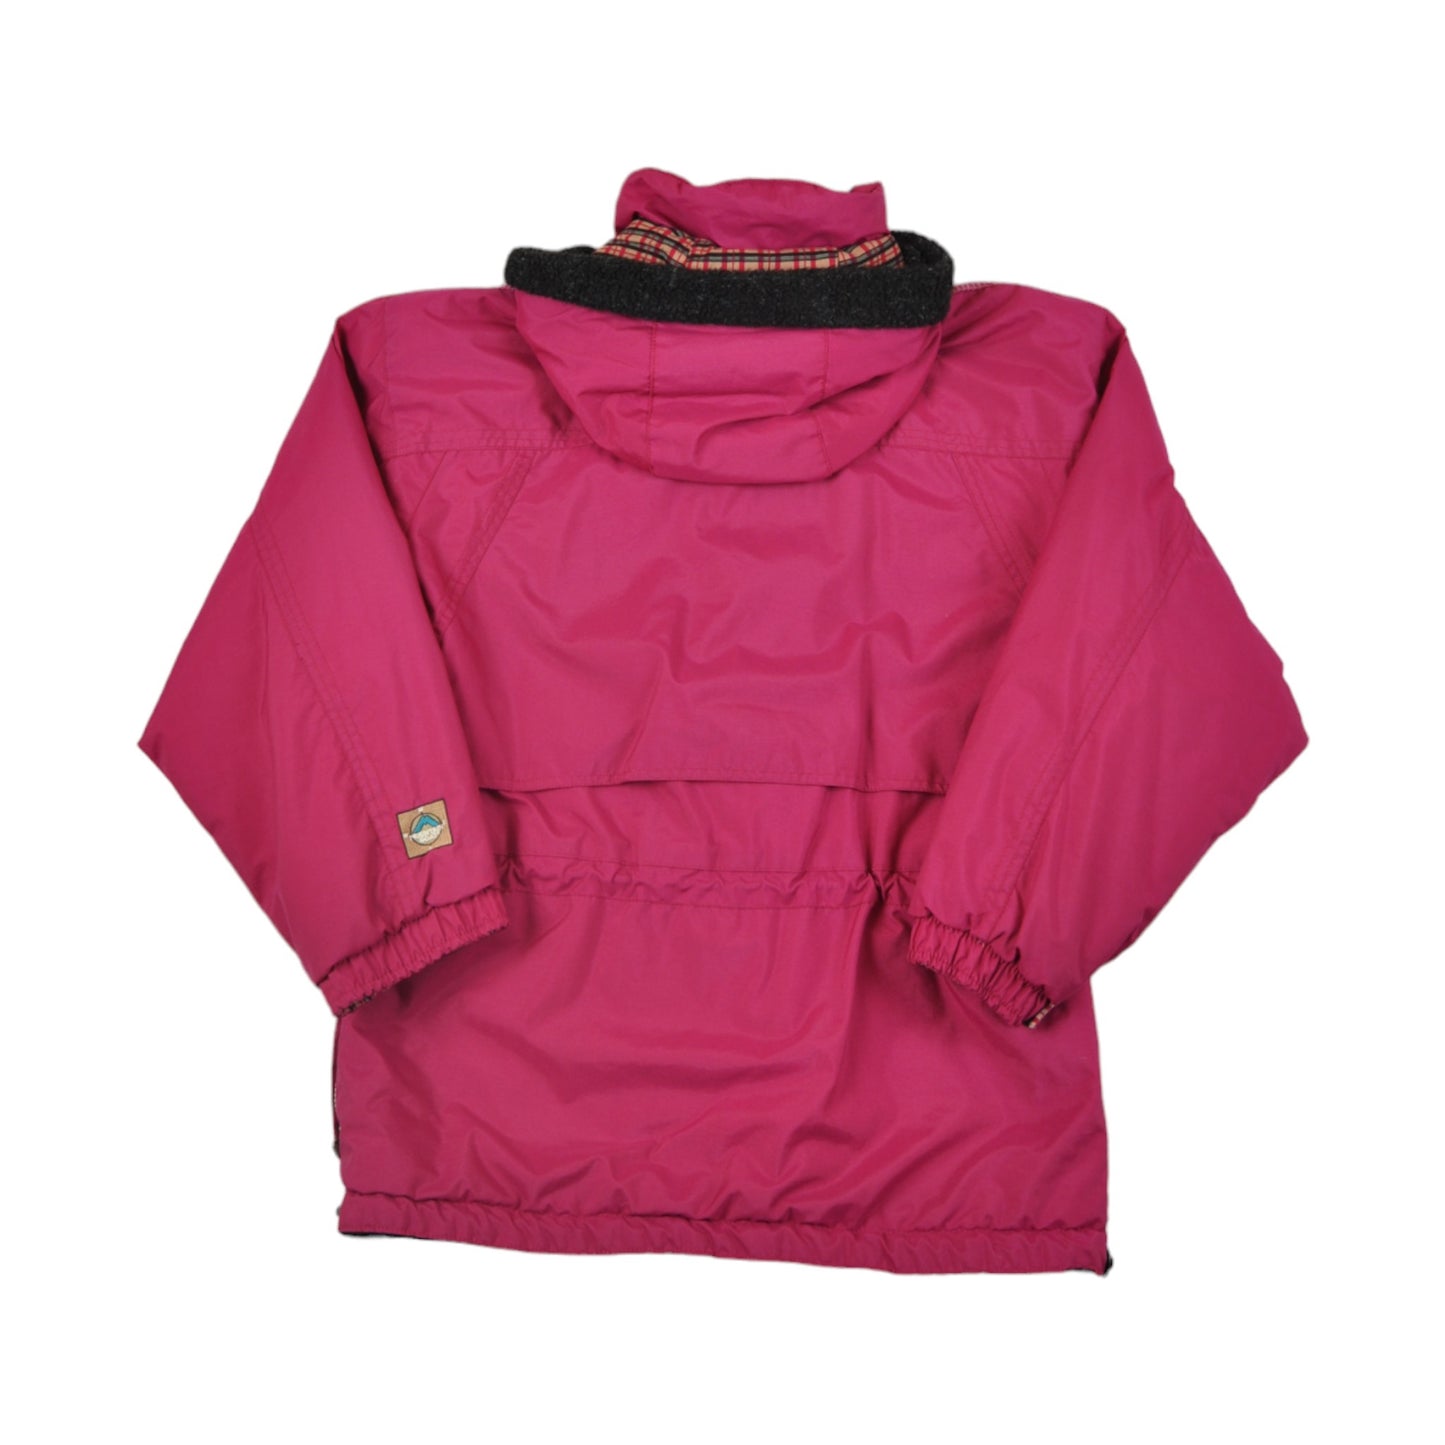 Vintage Mountain Goat Ski Jacket Pink Ladies Medium